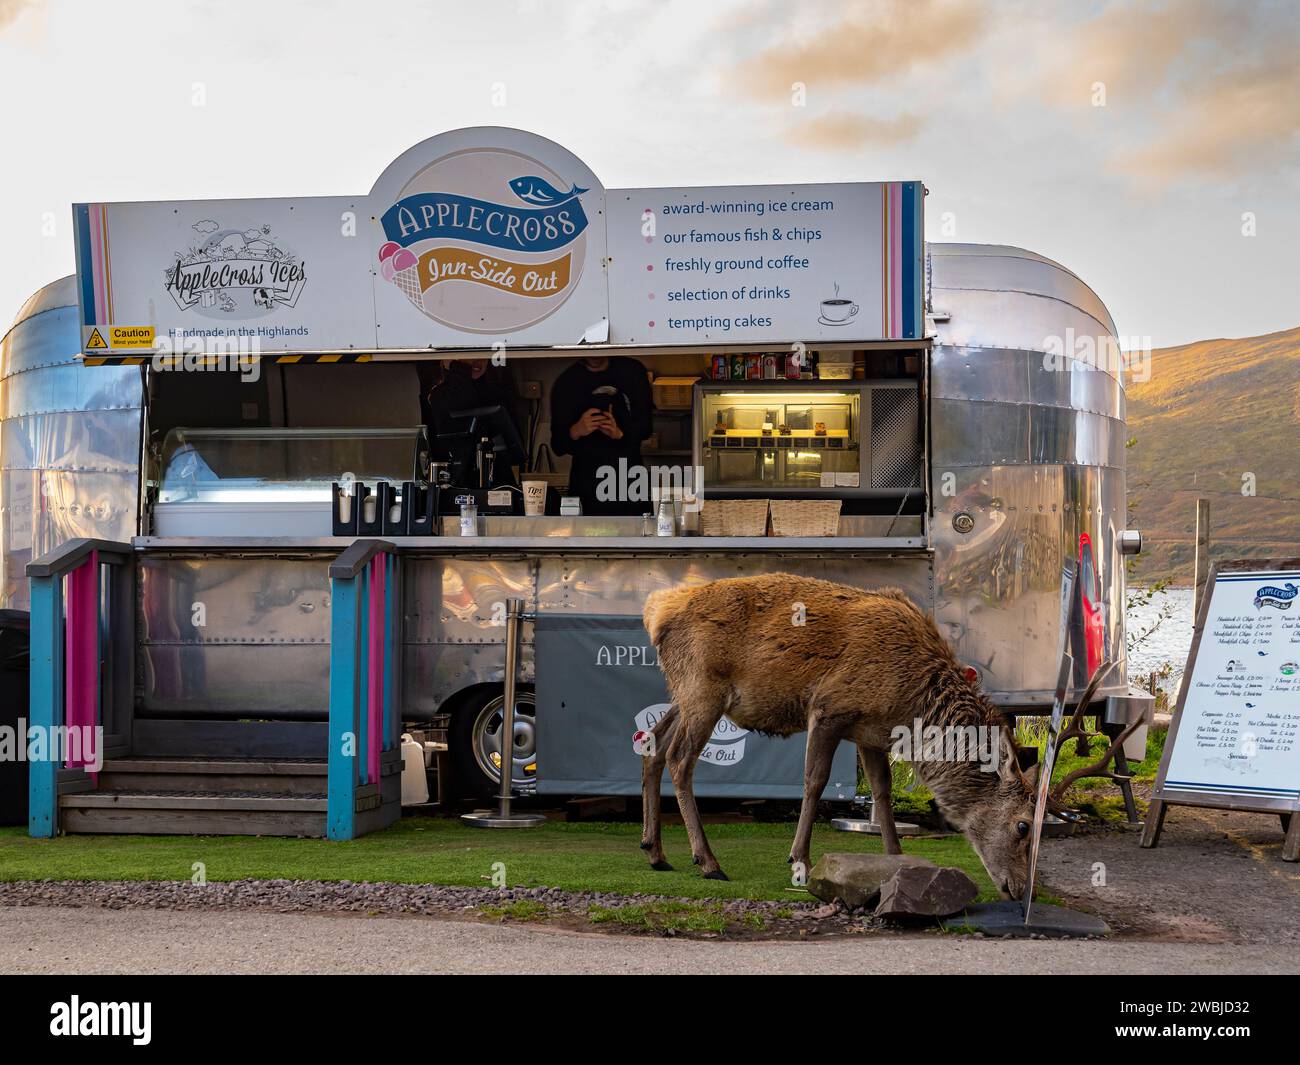 All'interno dell'hotel c'è un camion di cibo rétro fuori dall'Applecross Inn con un cervo che mangia di fronte, Applecross, Wester Ross, Scozia, Regno Unito, Highlands, Gran Bretagna Foto Stock